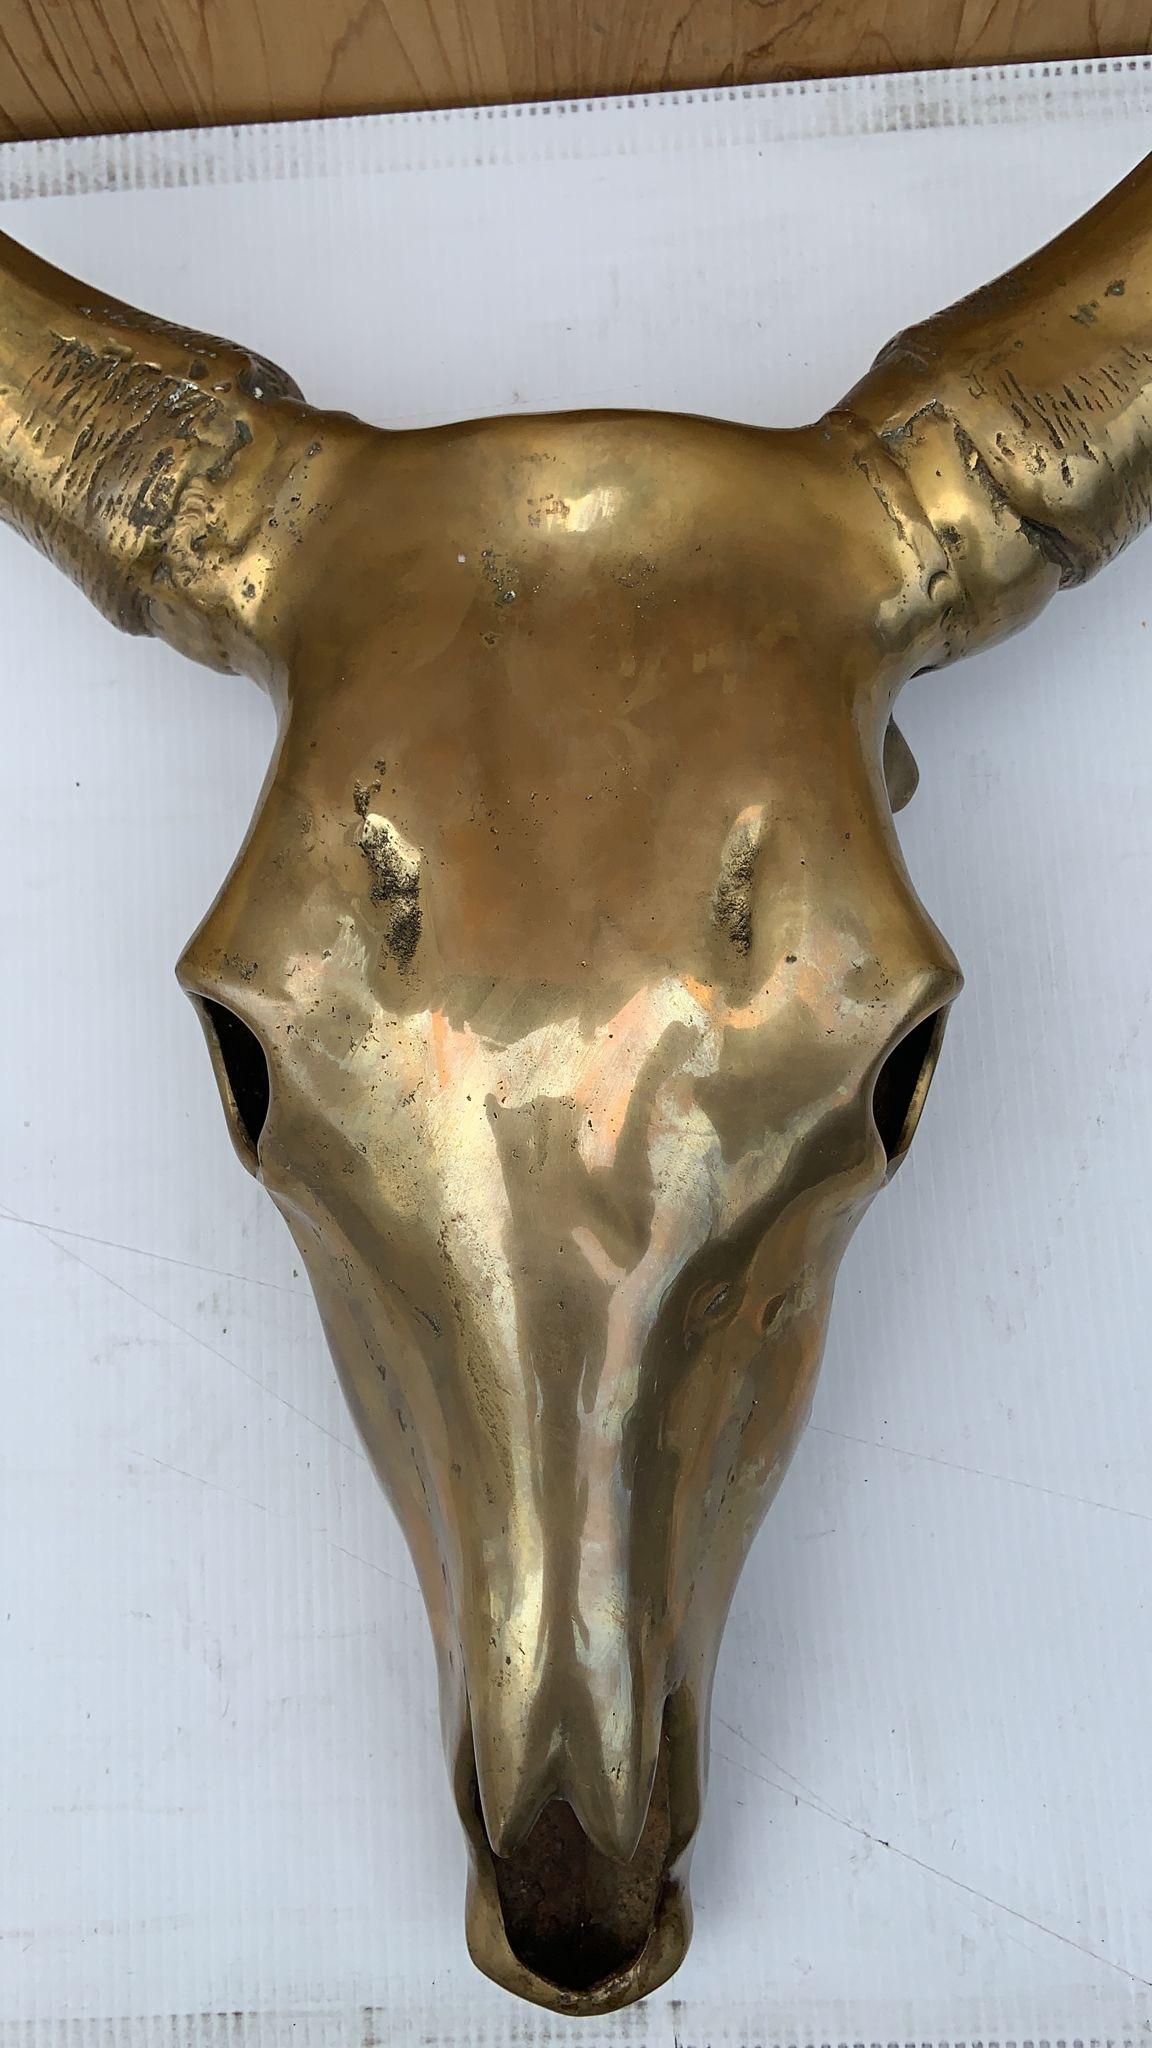 Vintage Modern Brass Cow Skull Wall Mounted Sculpture

Magnifique sculpture murale en laiton représentant un crâne de vache. 

Circa 1960

Dimensions :
D 6.5